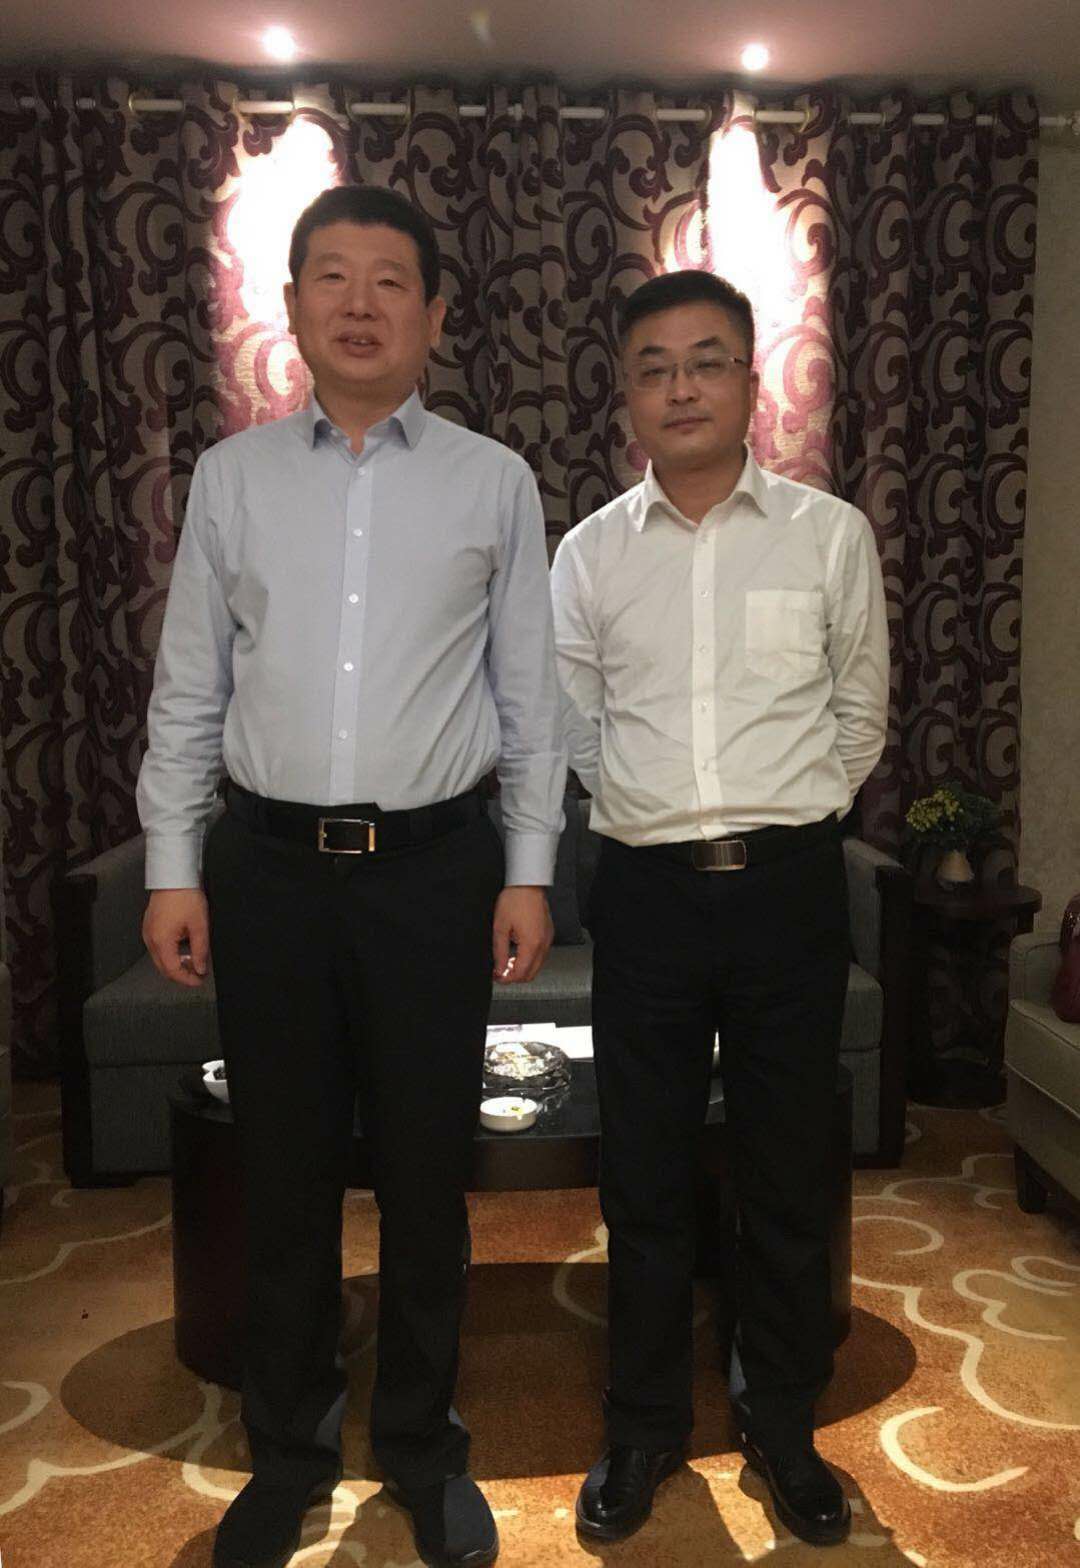 左(林州市市长王宝玉)右(中联众福副总裁冯强)在此期间,冯强一行在